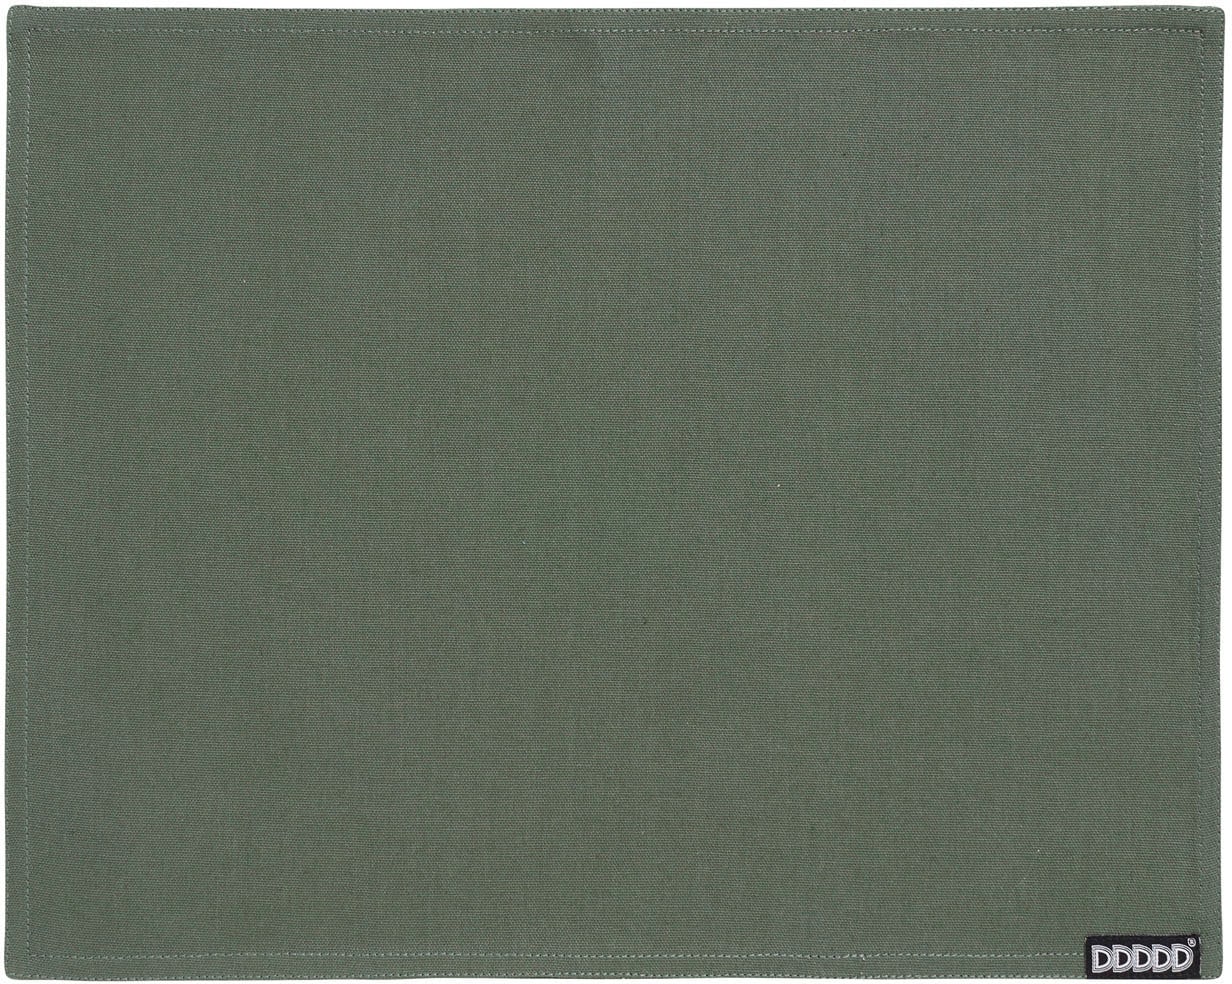 DDDDD Platzset »Kit«, (Set, 2 St.), Platzdecke, 35x45 cm, Baumwolle